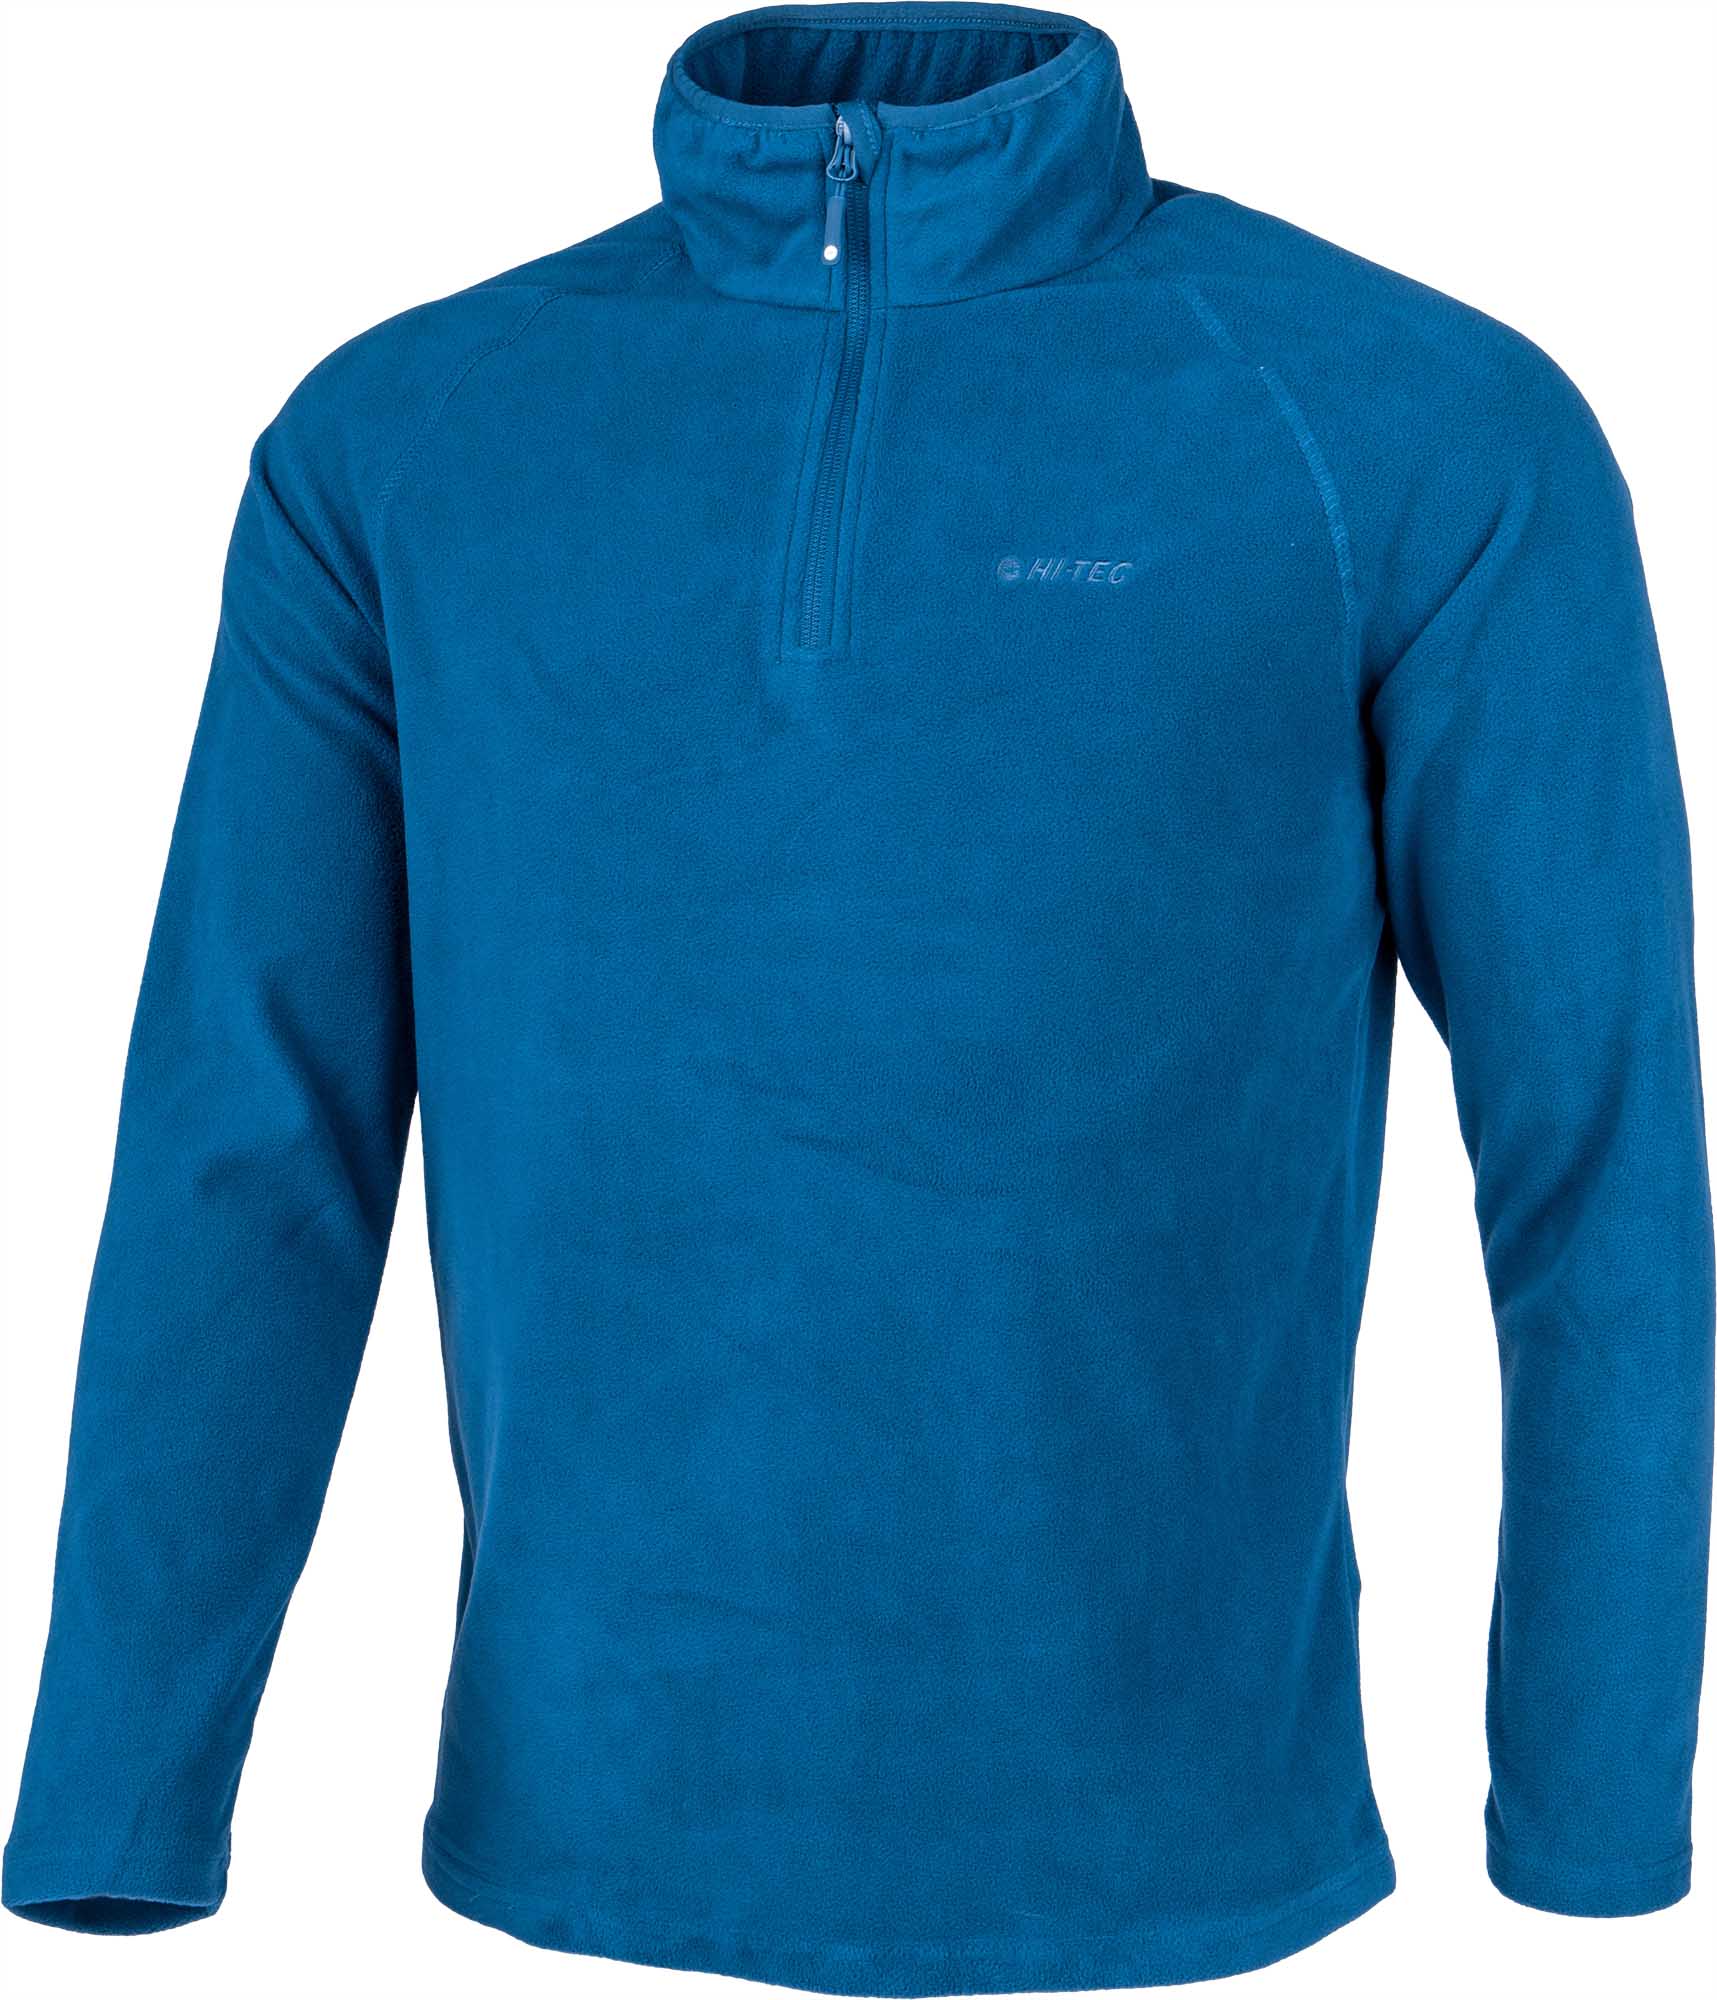 Men's microfleece sweatshirt